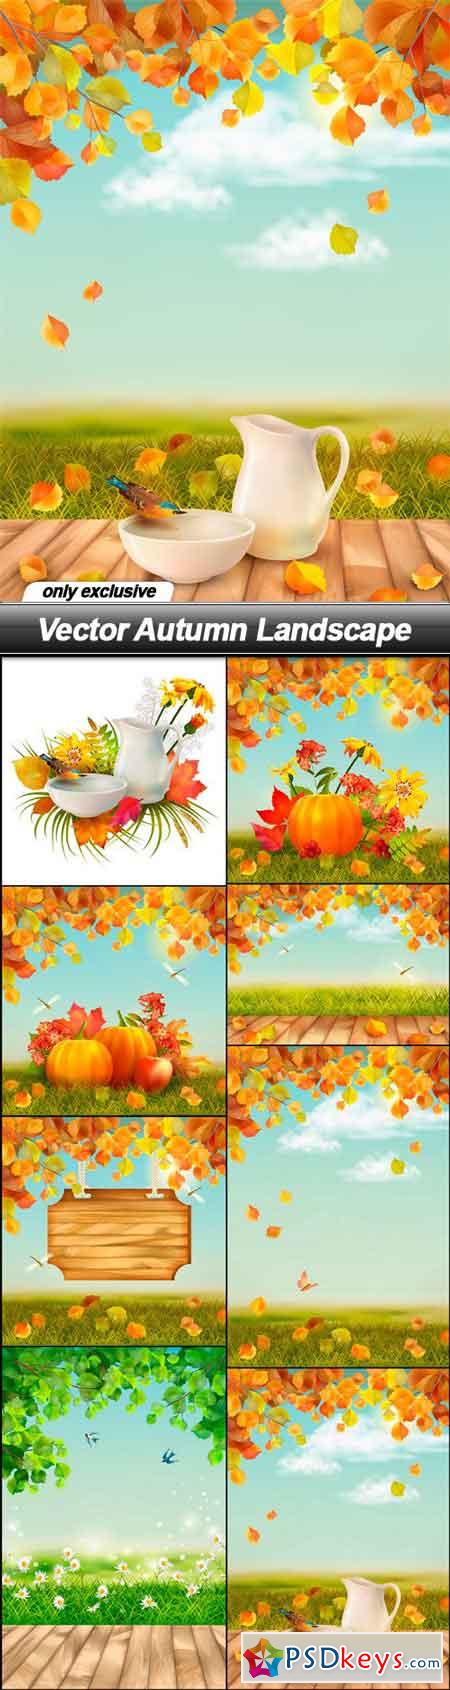 Vector Autumn Landscape - 8 EPS